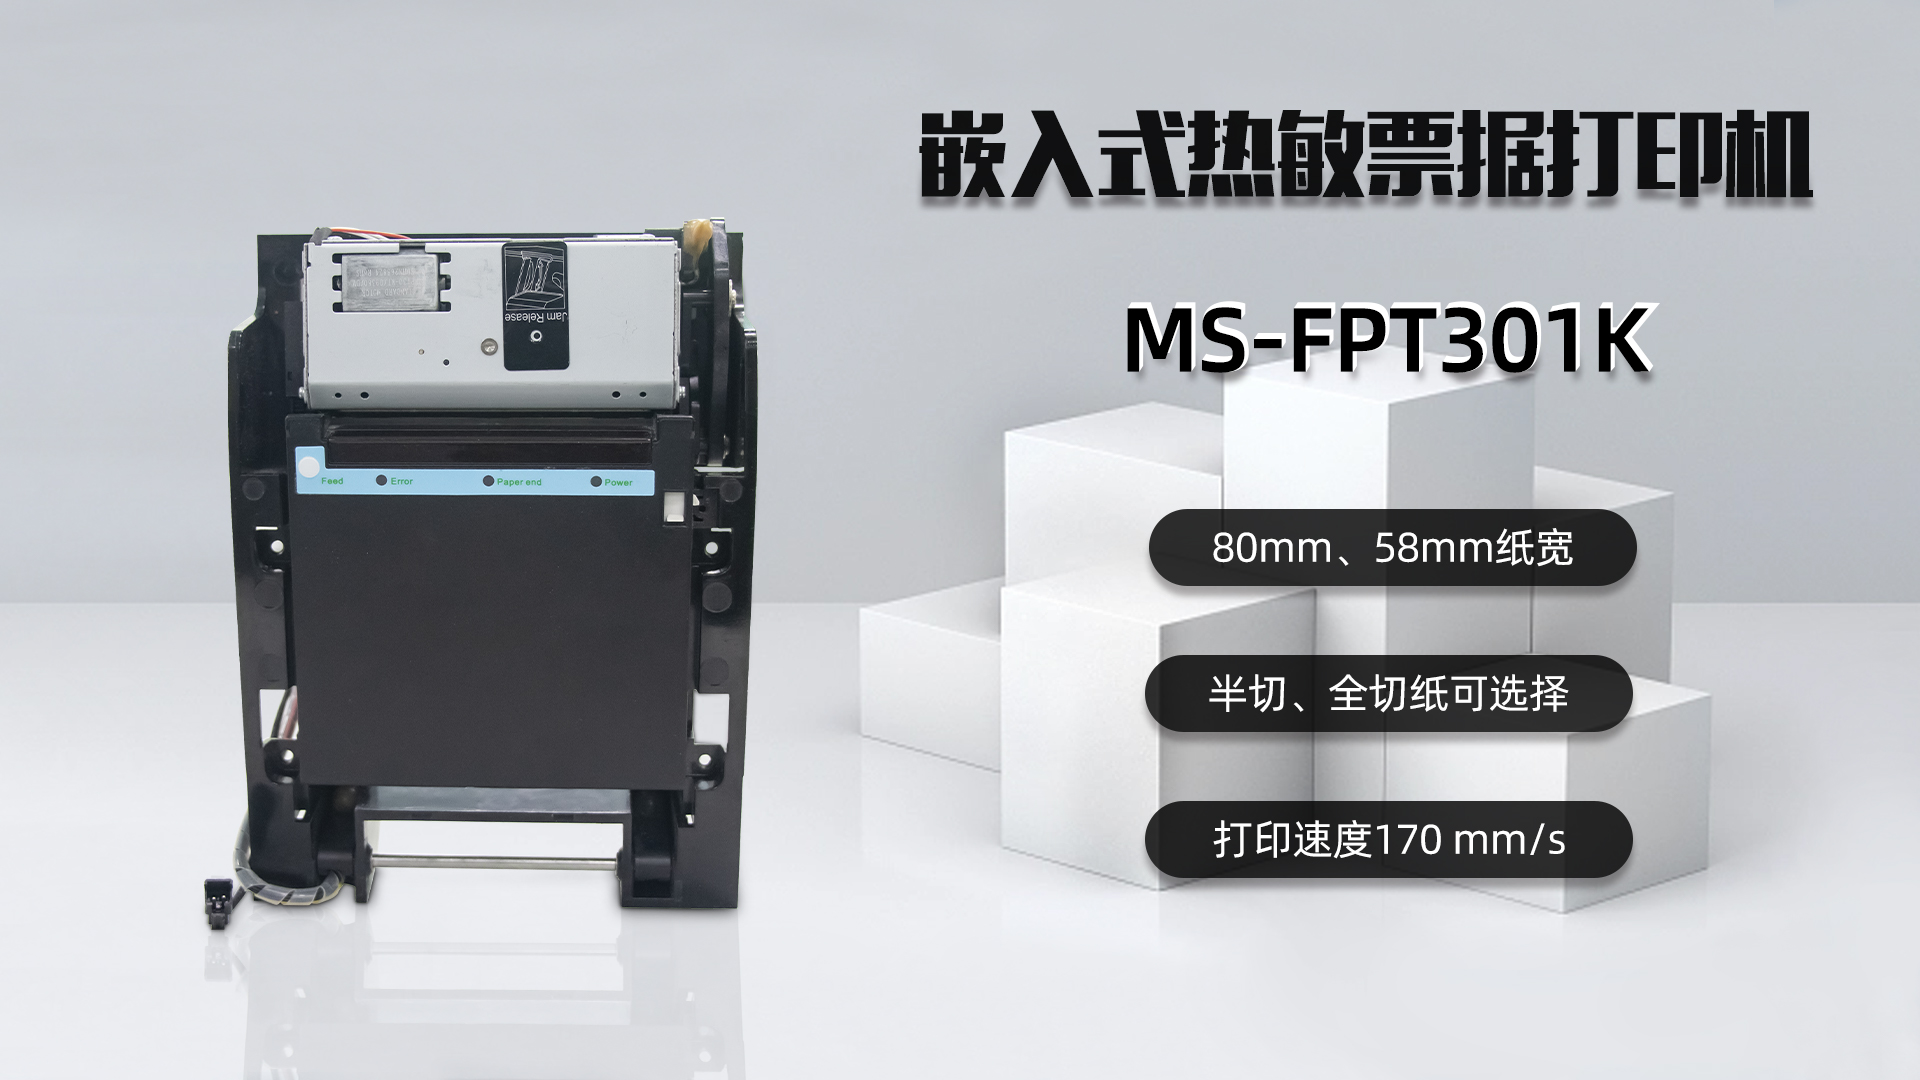 美松打印机MS-FPT301K为加油站自助机提供解决方案